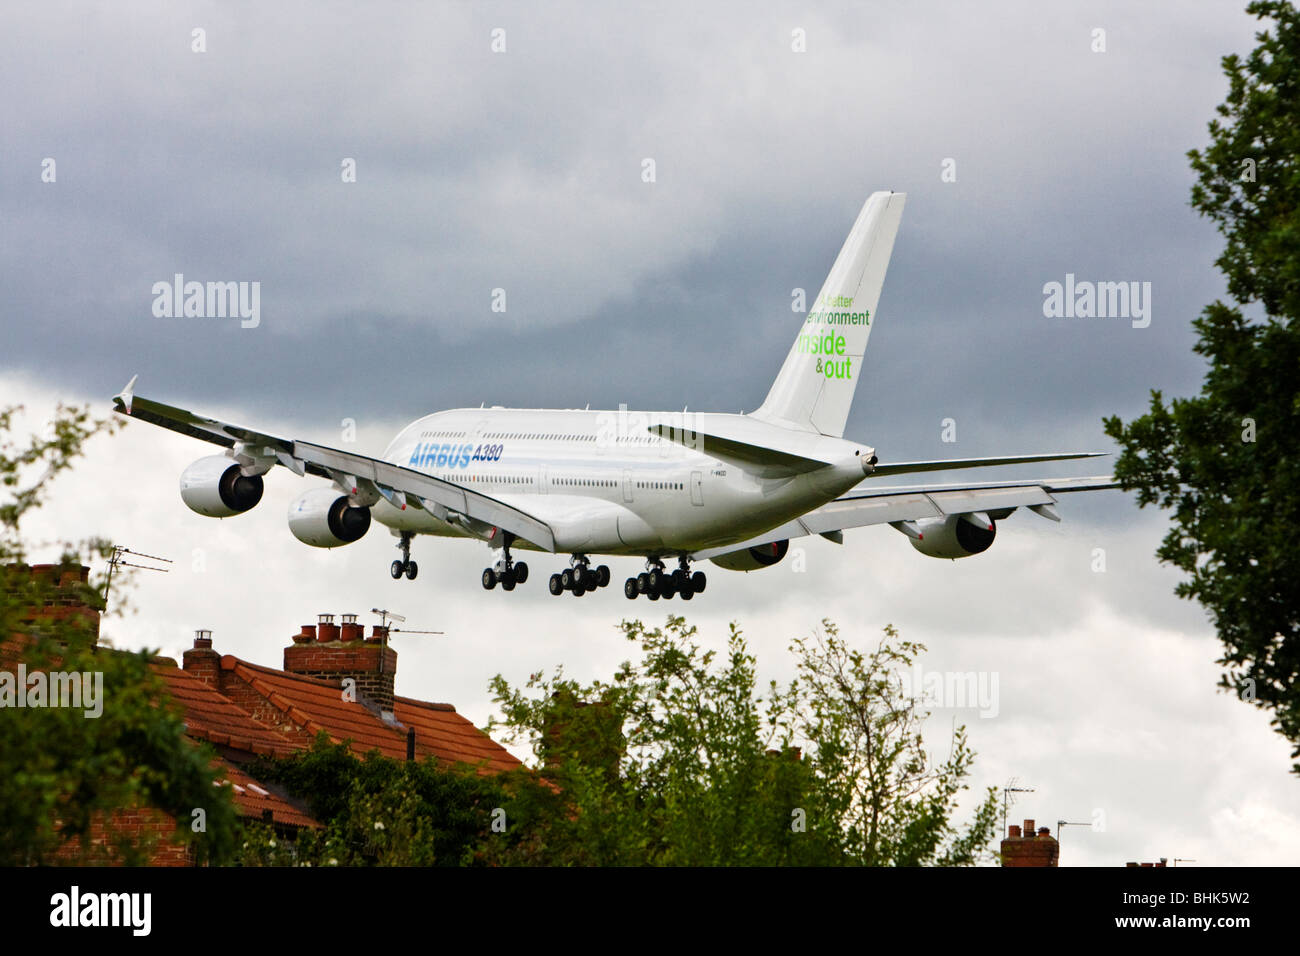 Un Airbus A380 à l'approche, à proximité de maisons privées, l'aéroport de Manchester, Angleterre, RU Banque D'Images